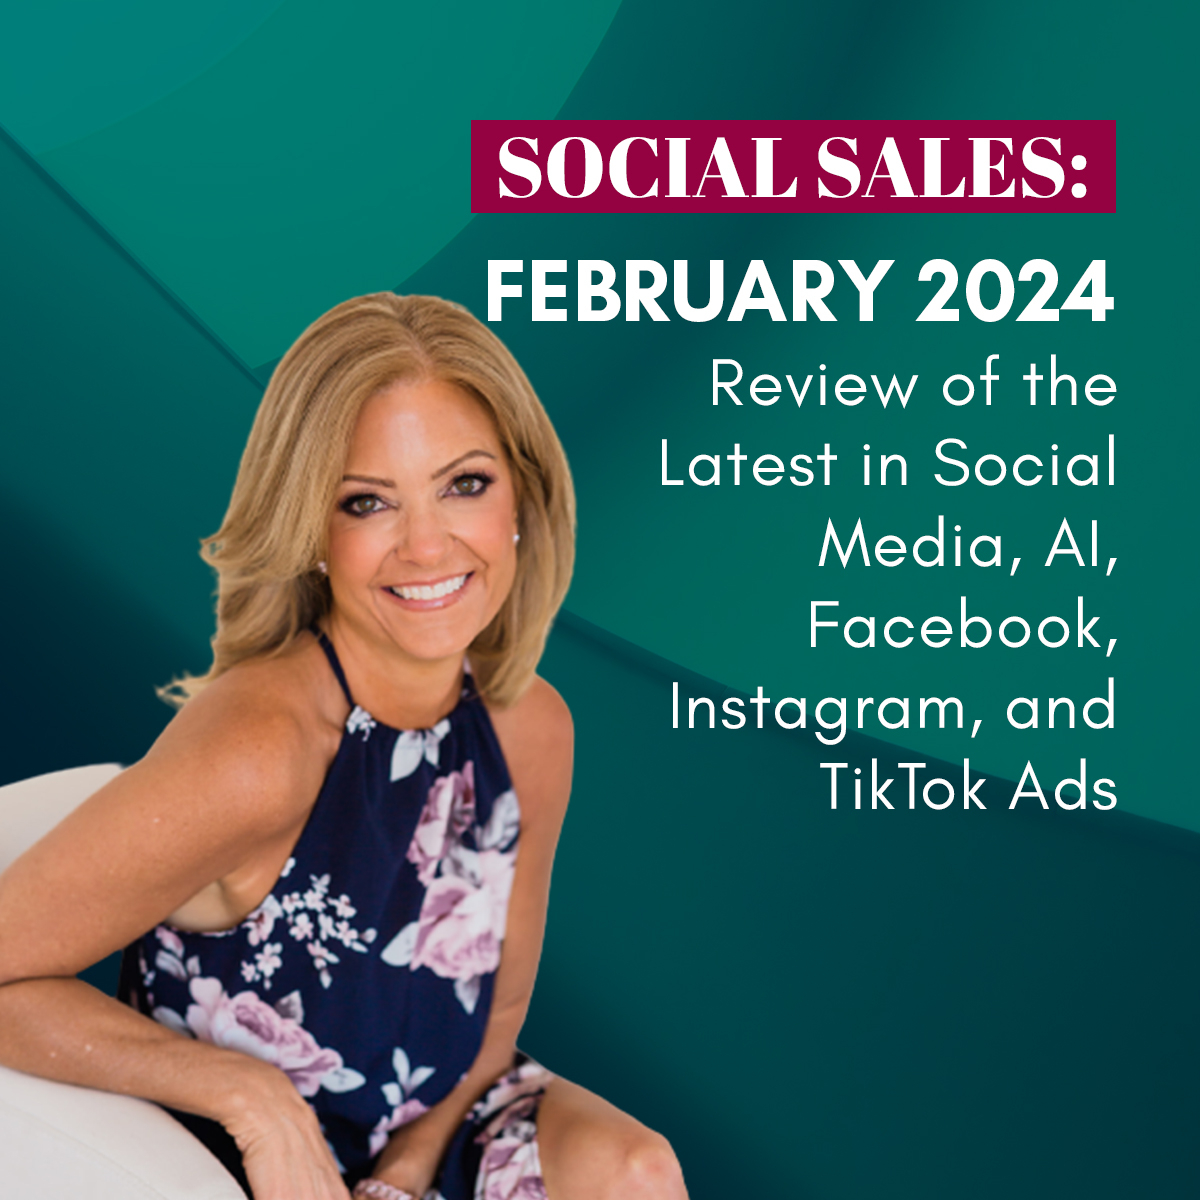 Social Sales: February 2024 Marketing Review – Social Media, AI, Facebook, Instagram, and TikTok Ads